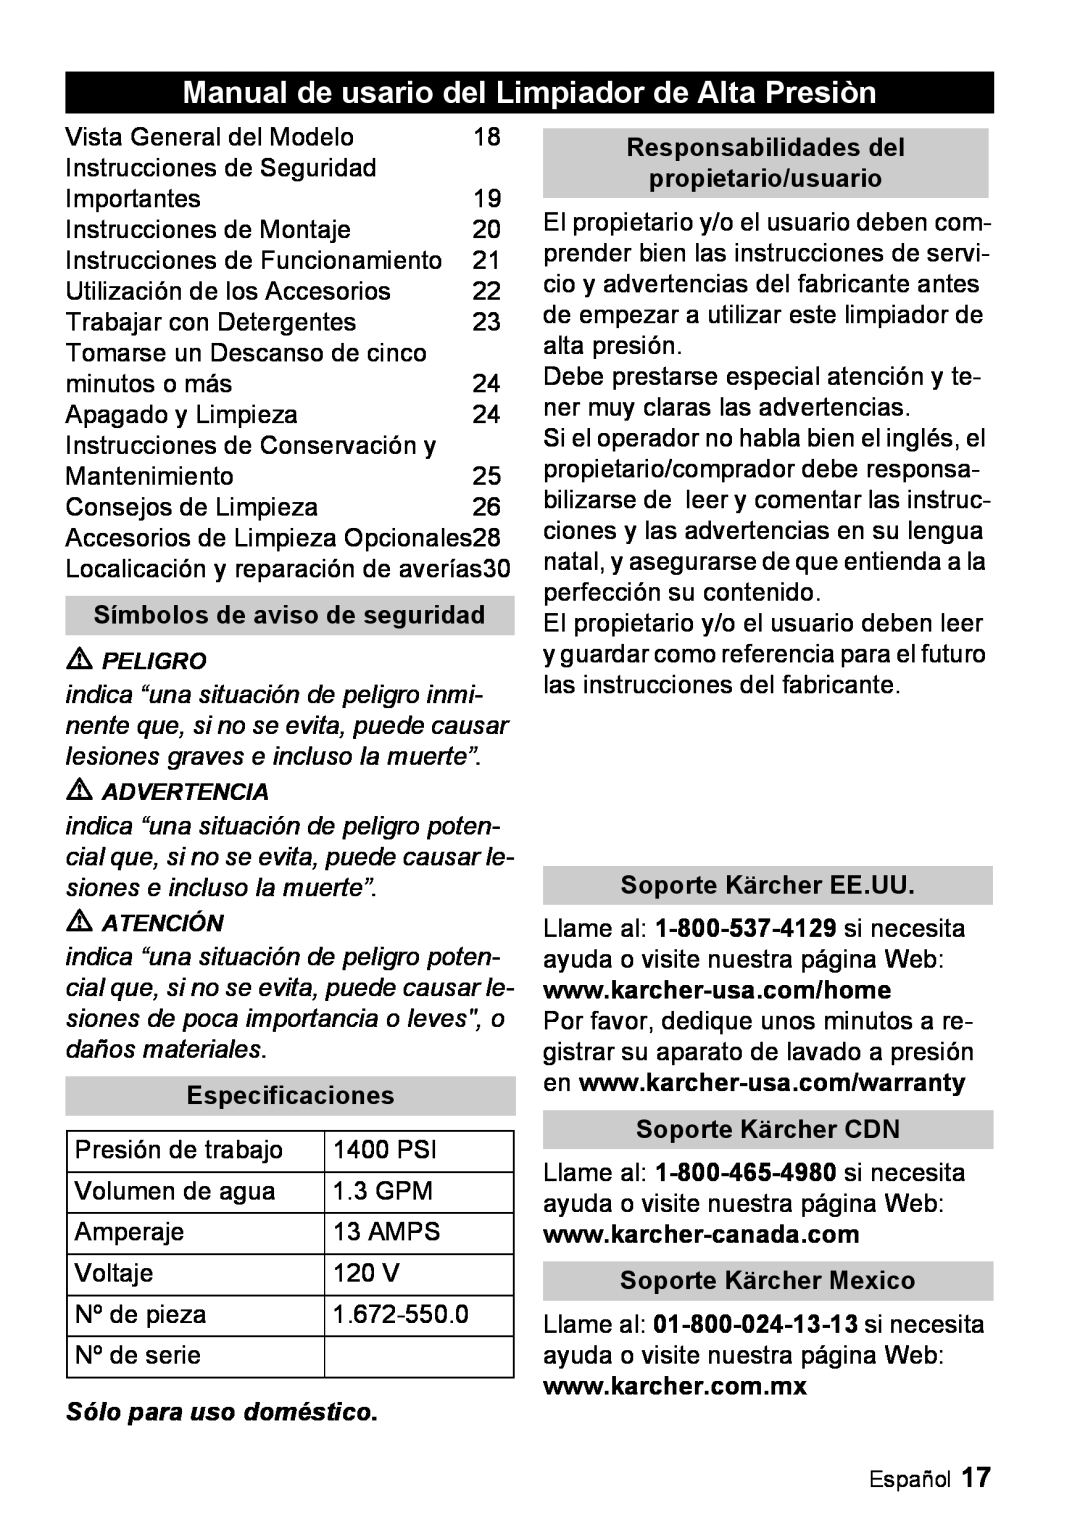 Karcher K 2.16 manual Manual de usario del Limpiador de Alta Presiòn, Símbolos de aviso de seguridad, Especificaciones 